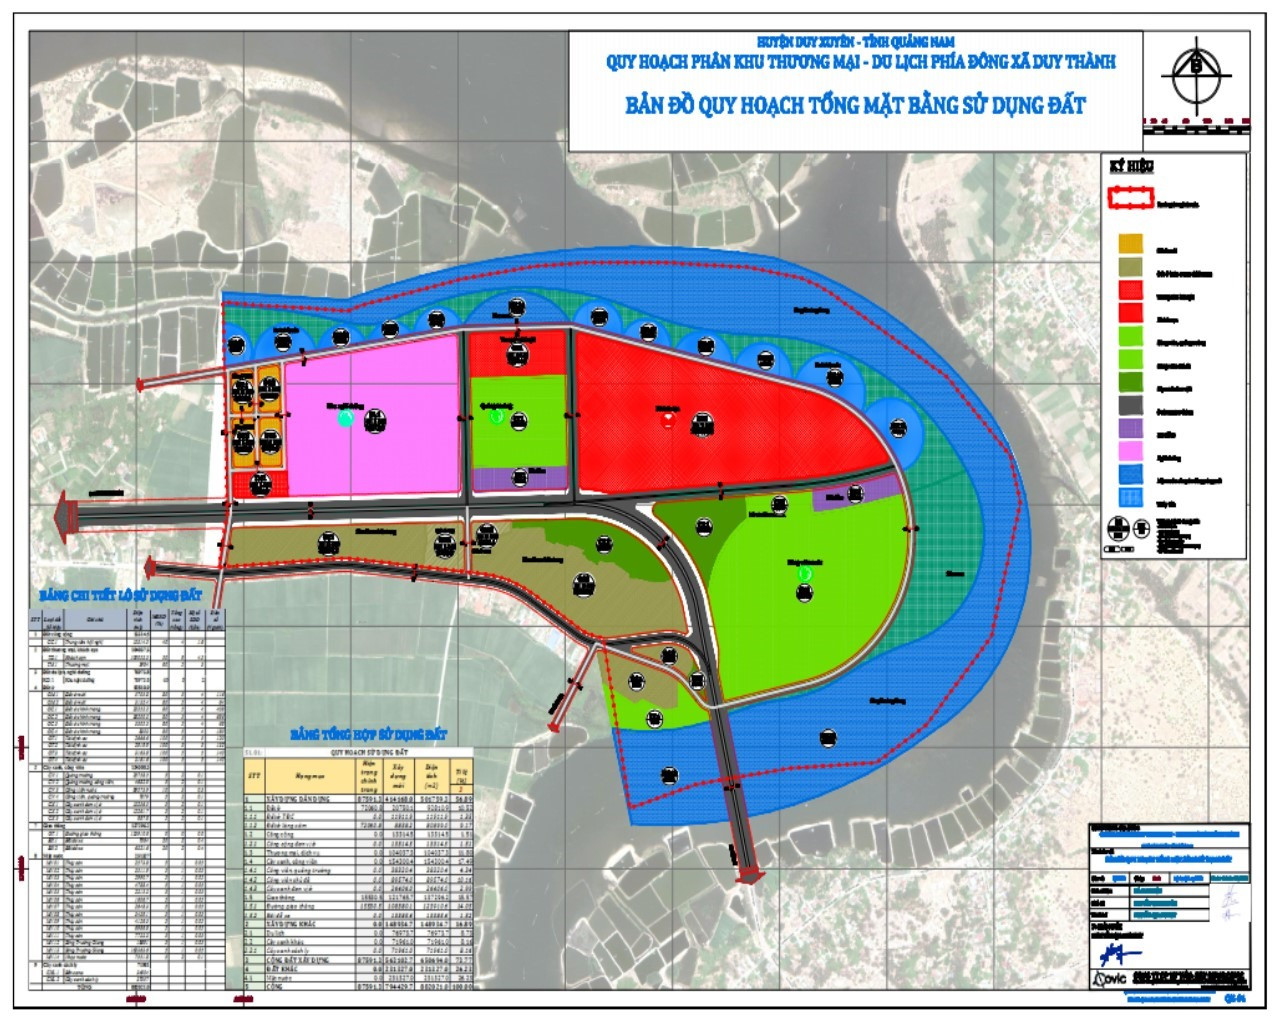 Quy hoạch phân khu xây dựng (tỷ lệ 1/2000) Khu thương mại - du lịch phía đông xã Duy Thành (Duy Xuyên)